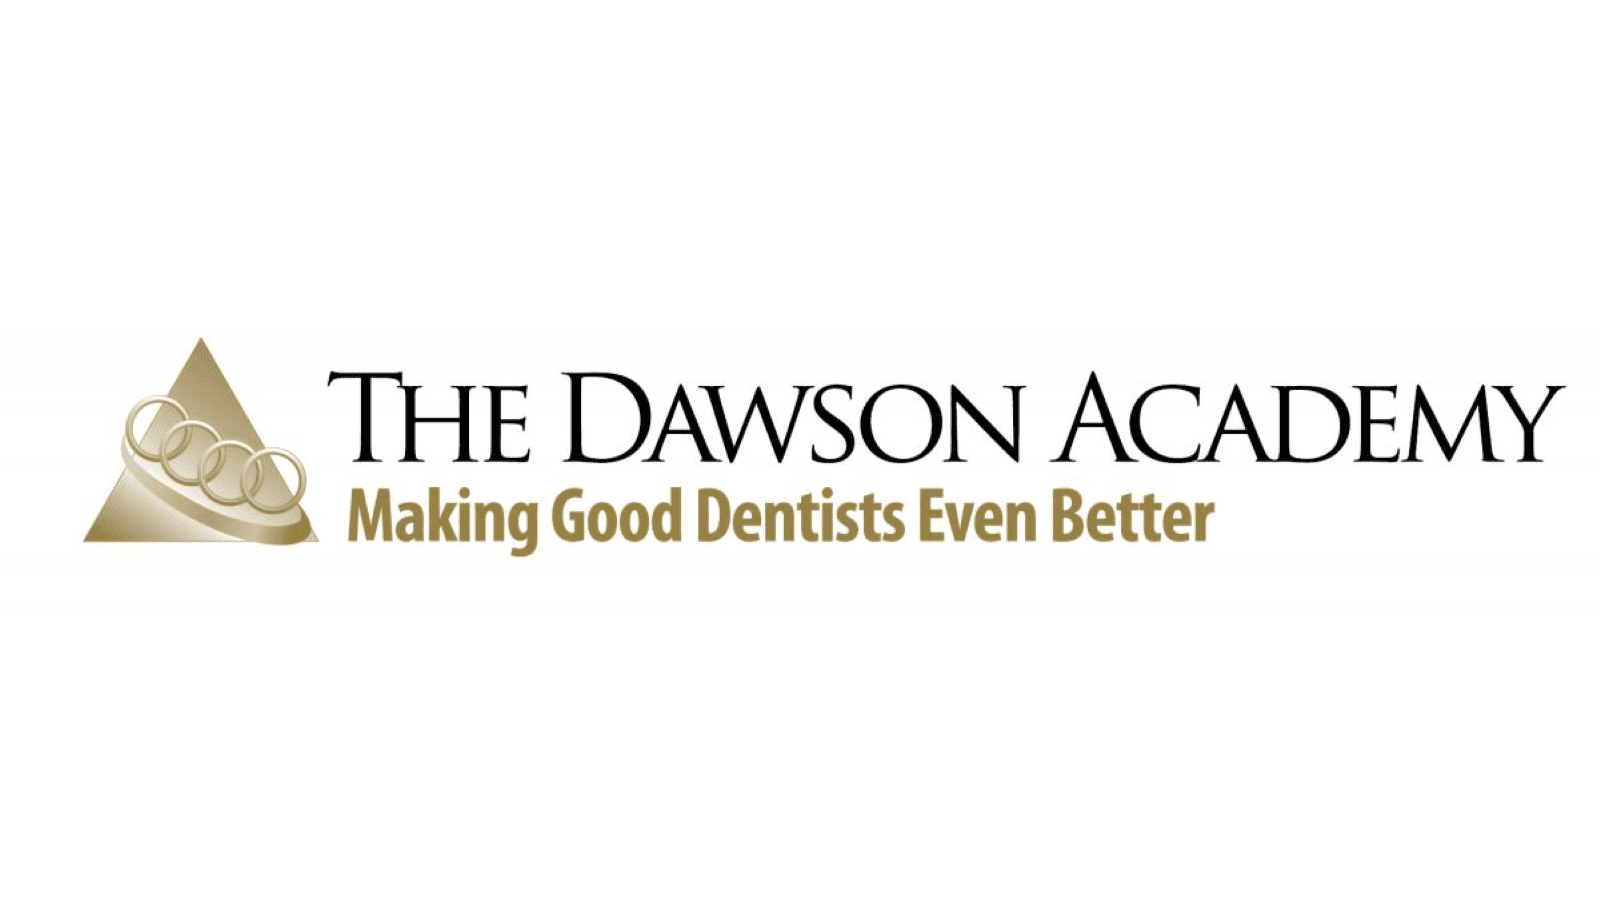 The dawson academy